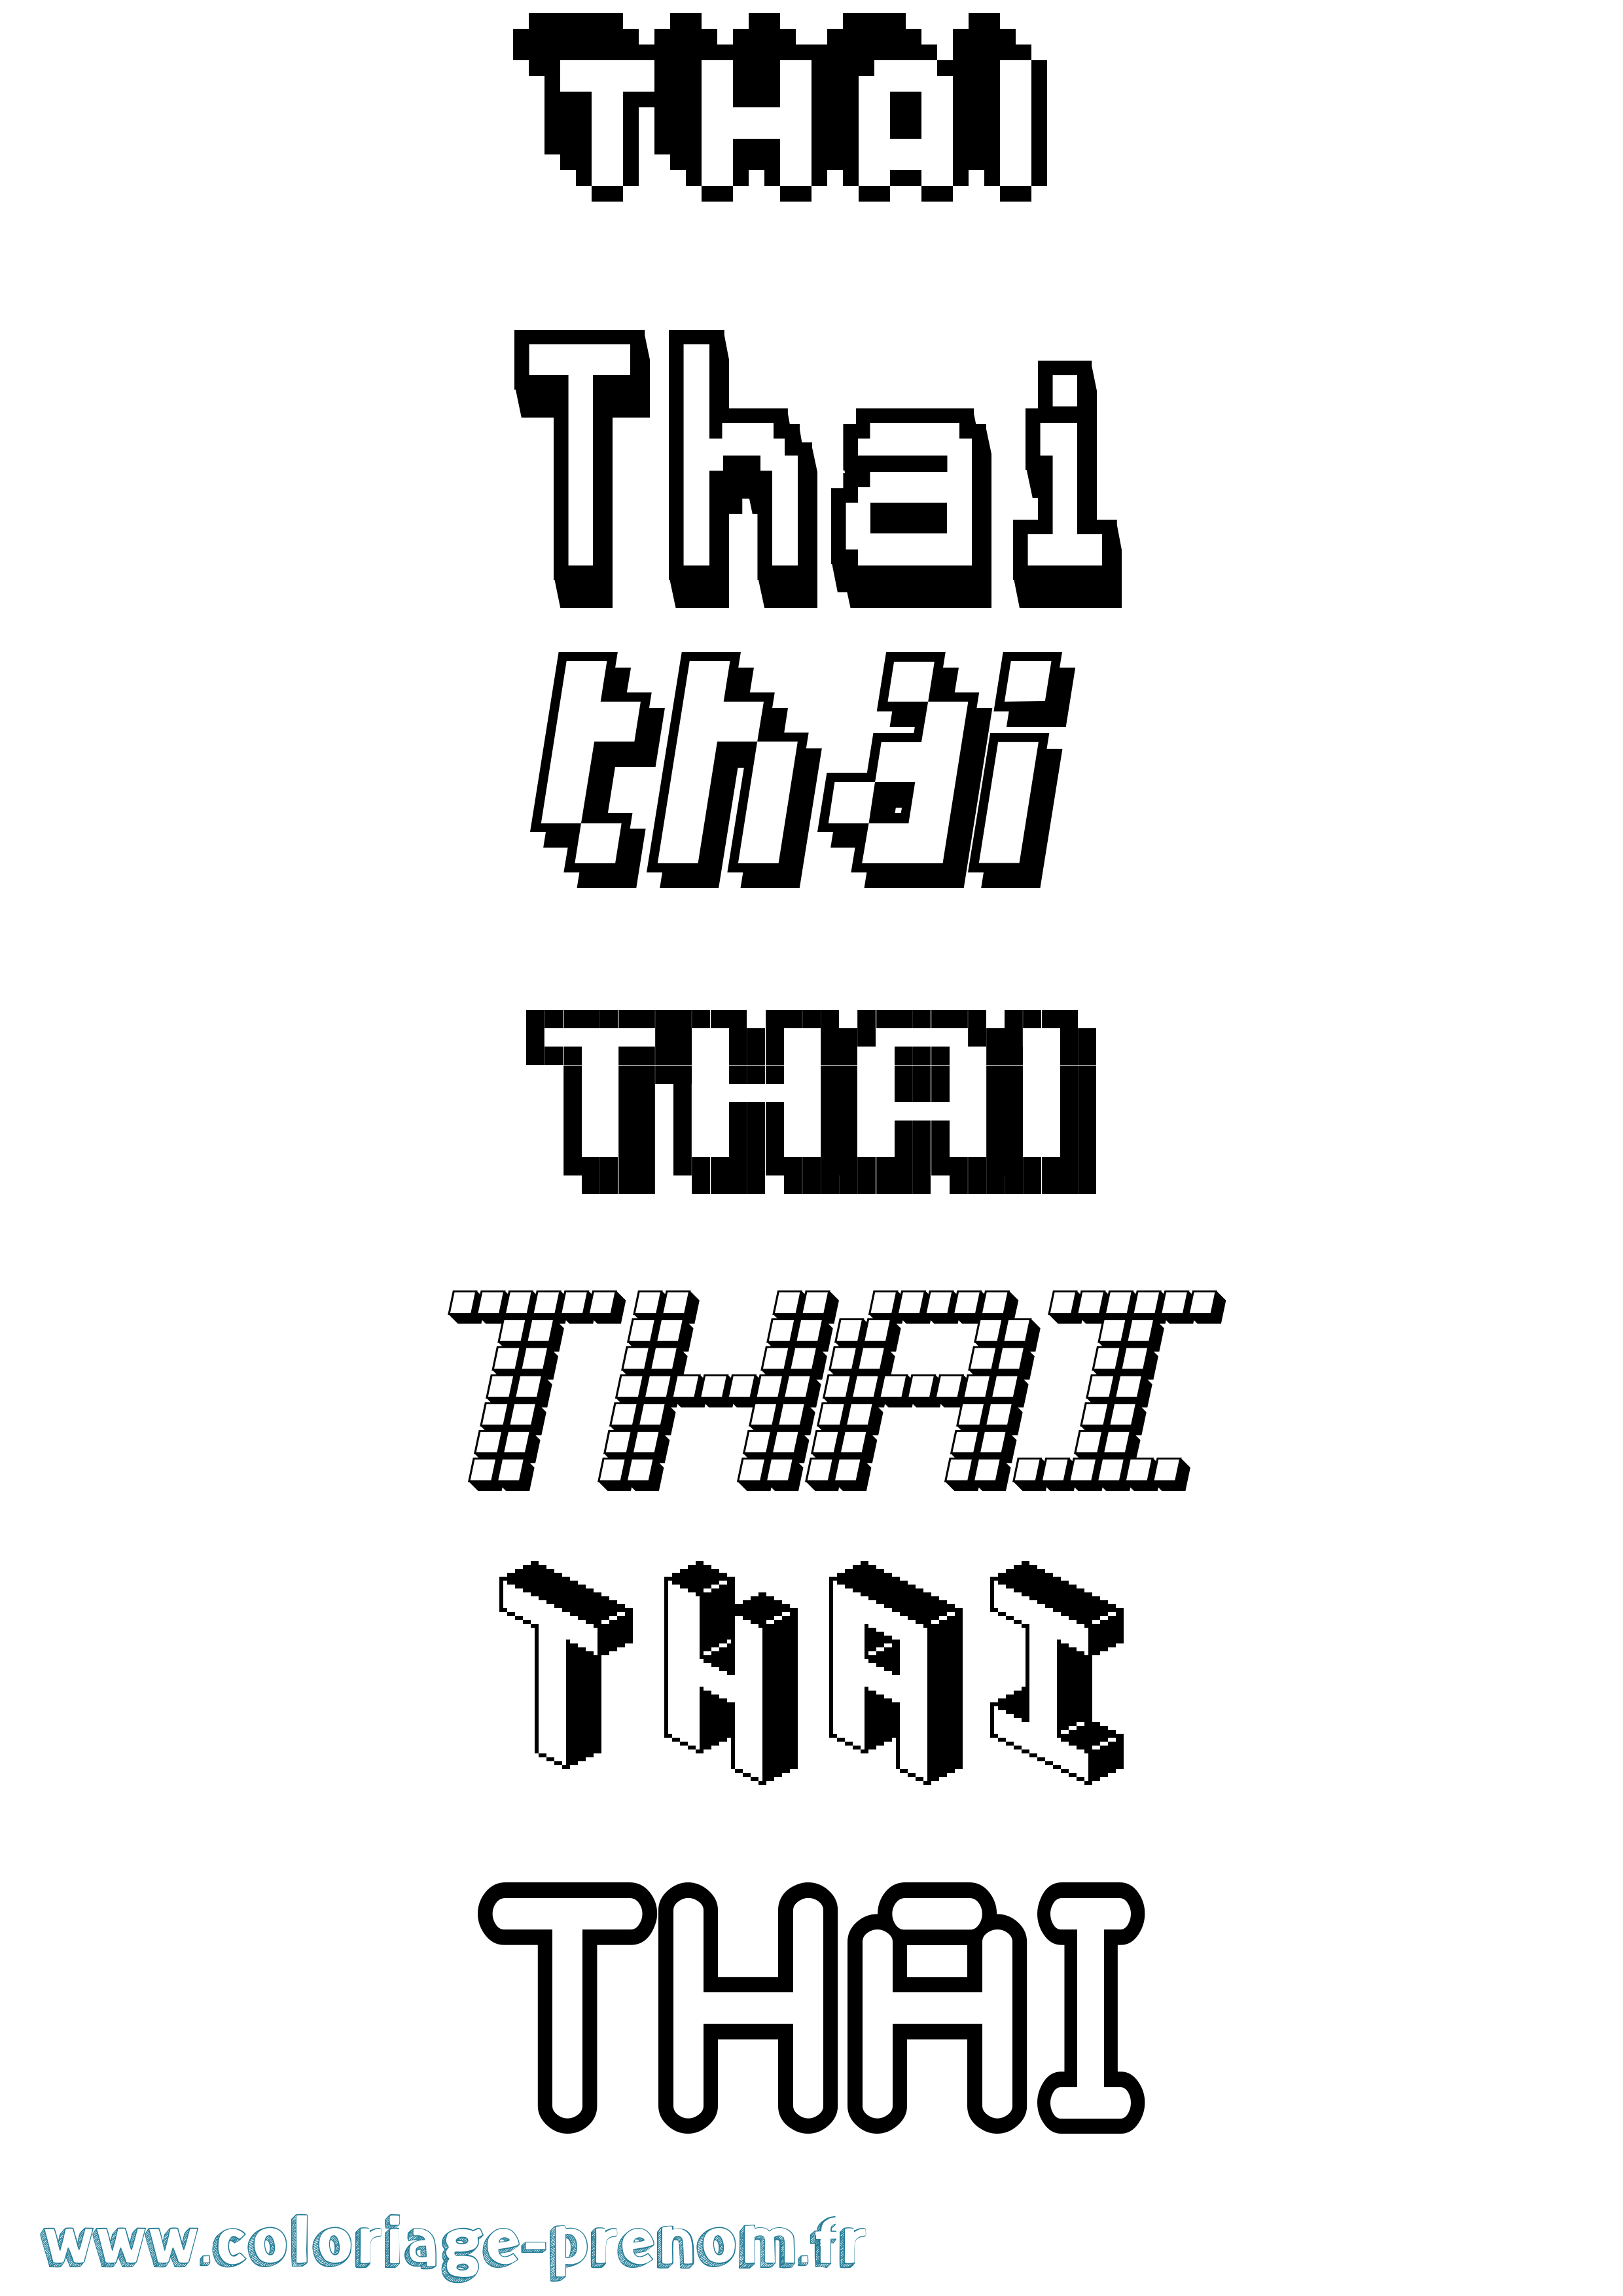 Coloriage prénom Thai Pixel